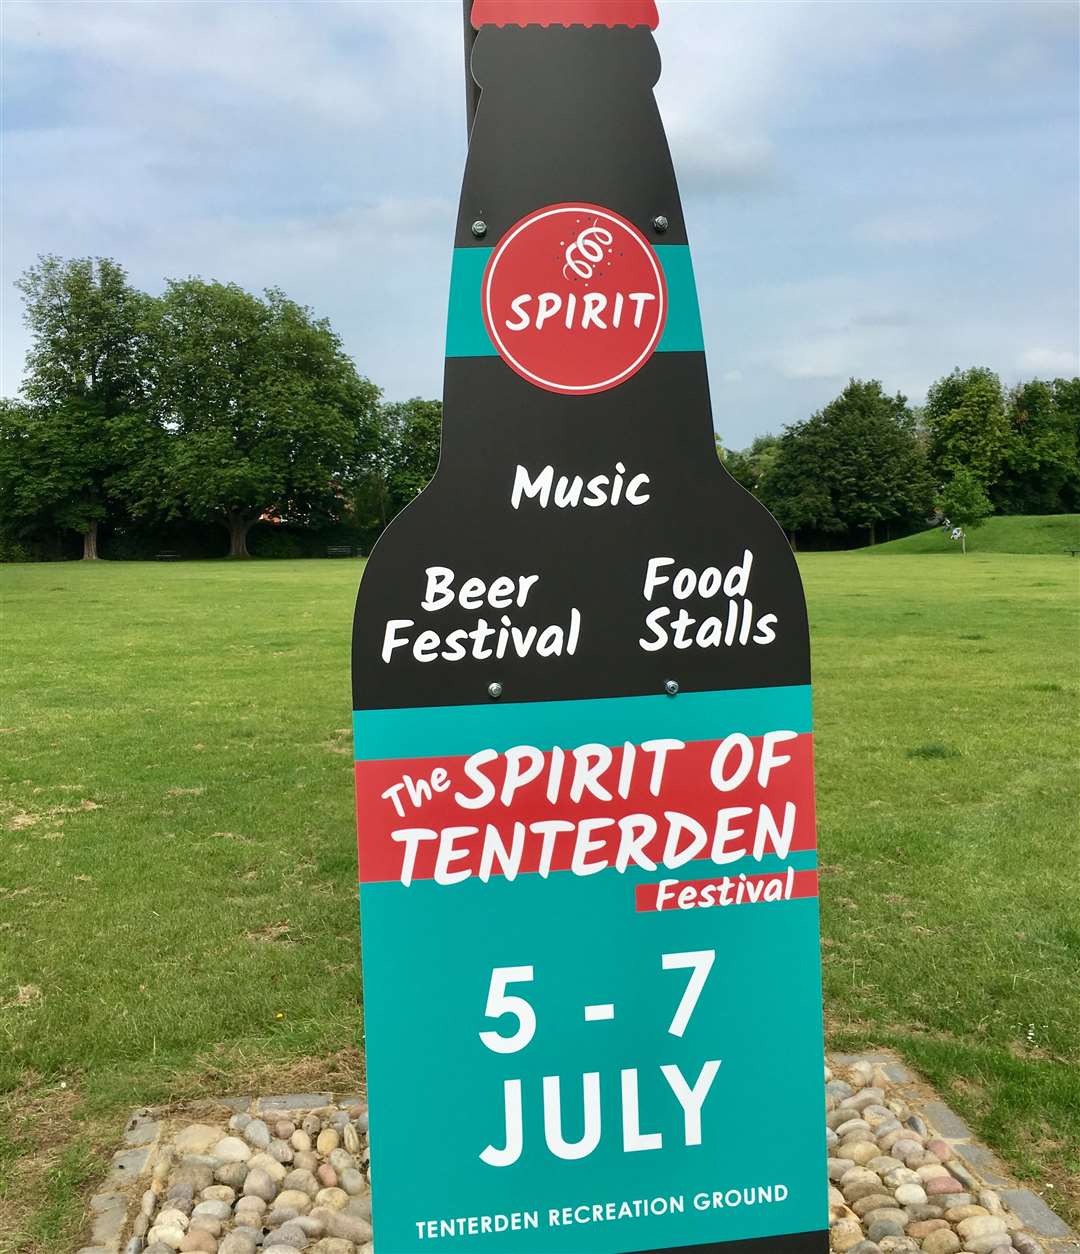 The Spirit of Tenterden festival